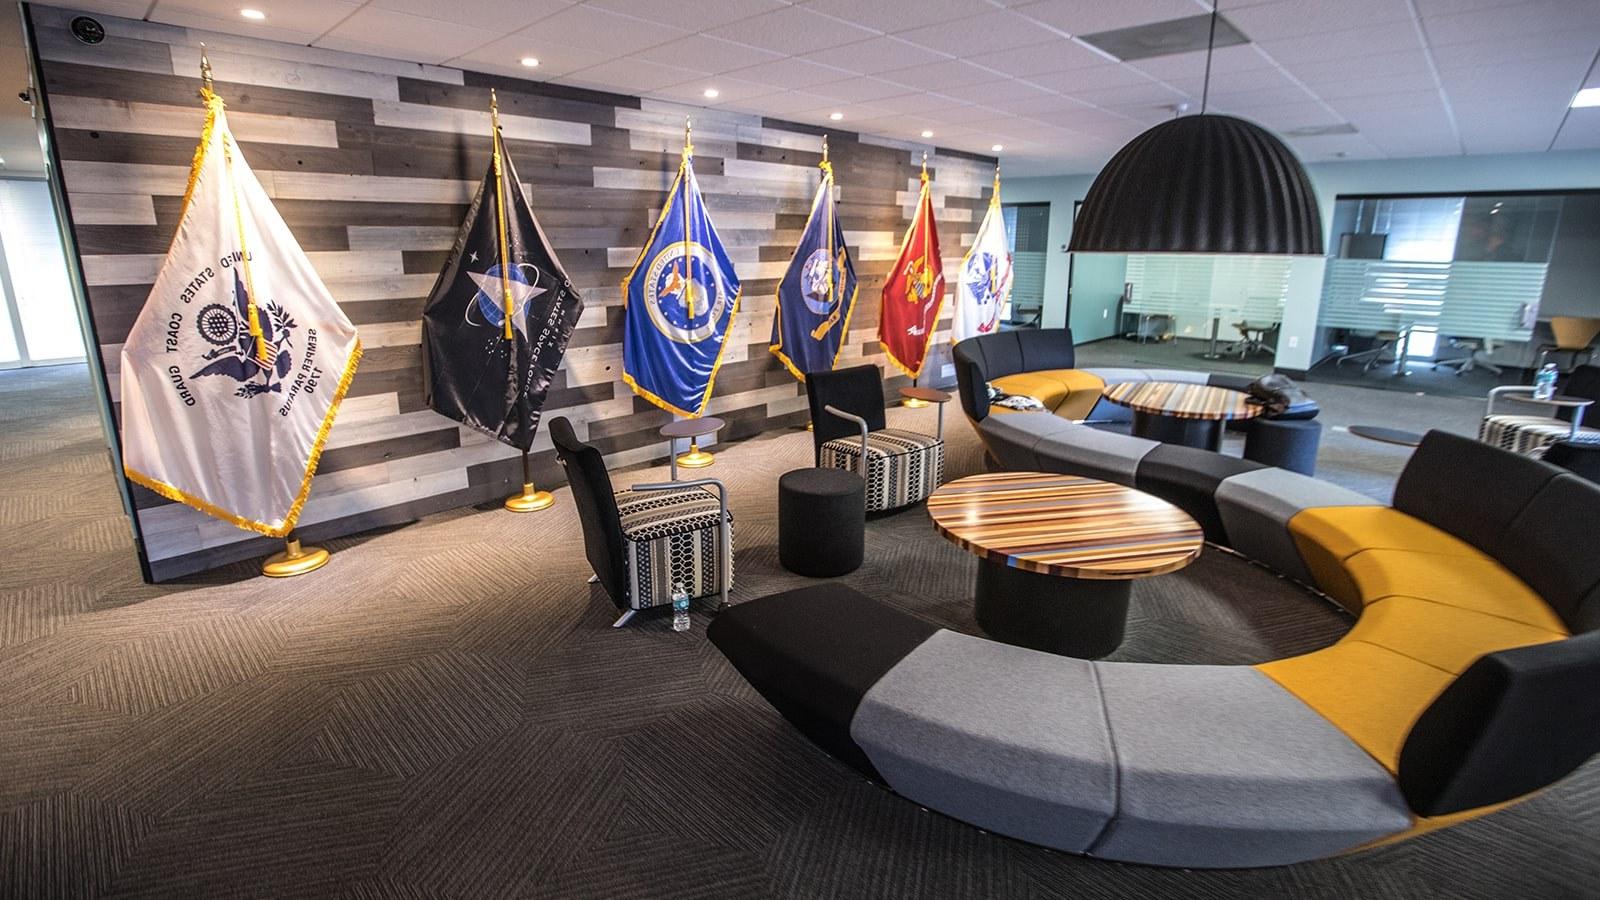 满帆军校学生成功中心的一张图片显示了一张大沙发, 小型会议室, 以及代表美国各军种的旗帜.